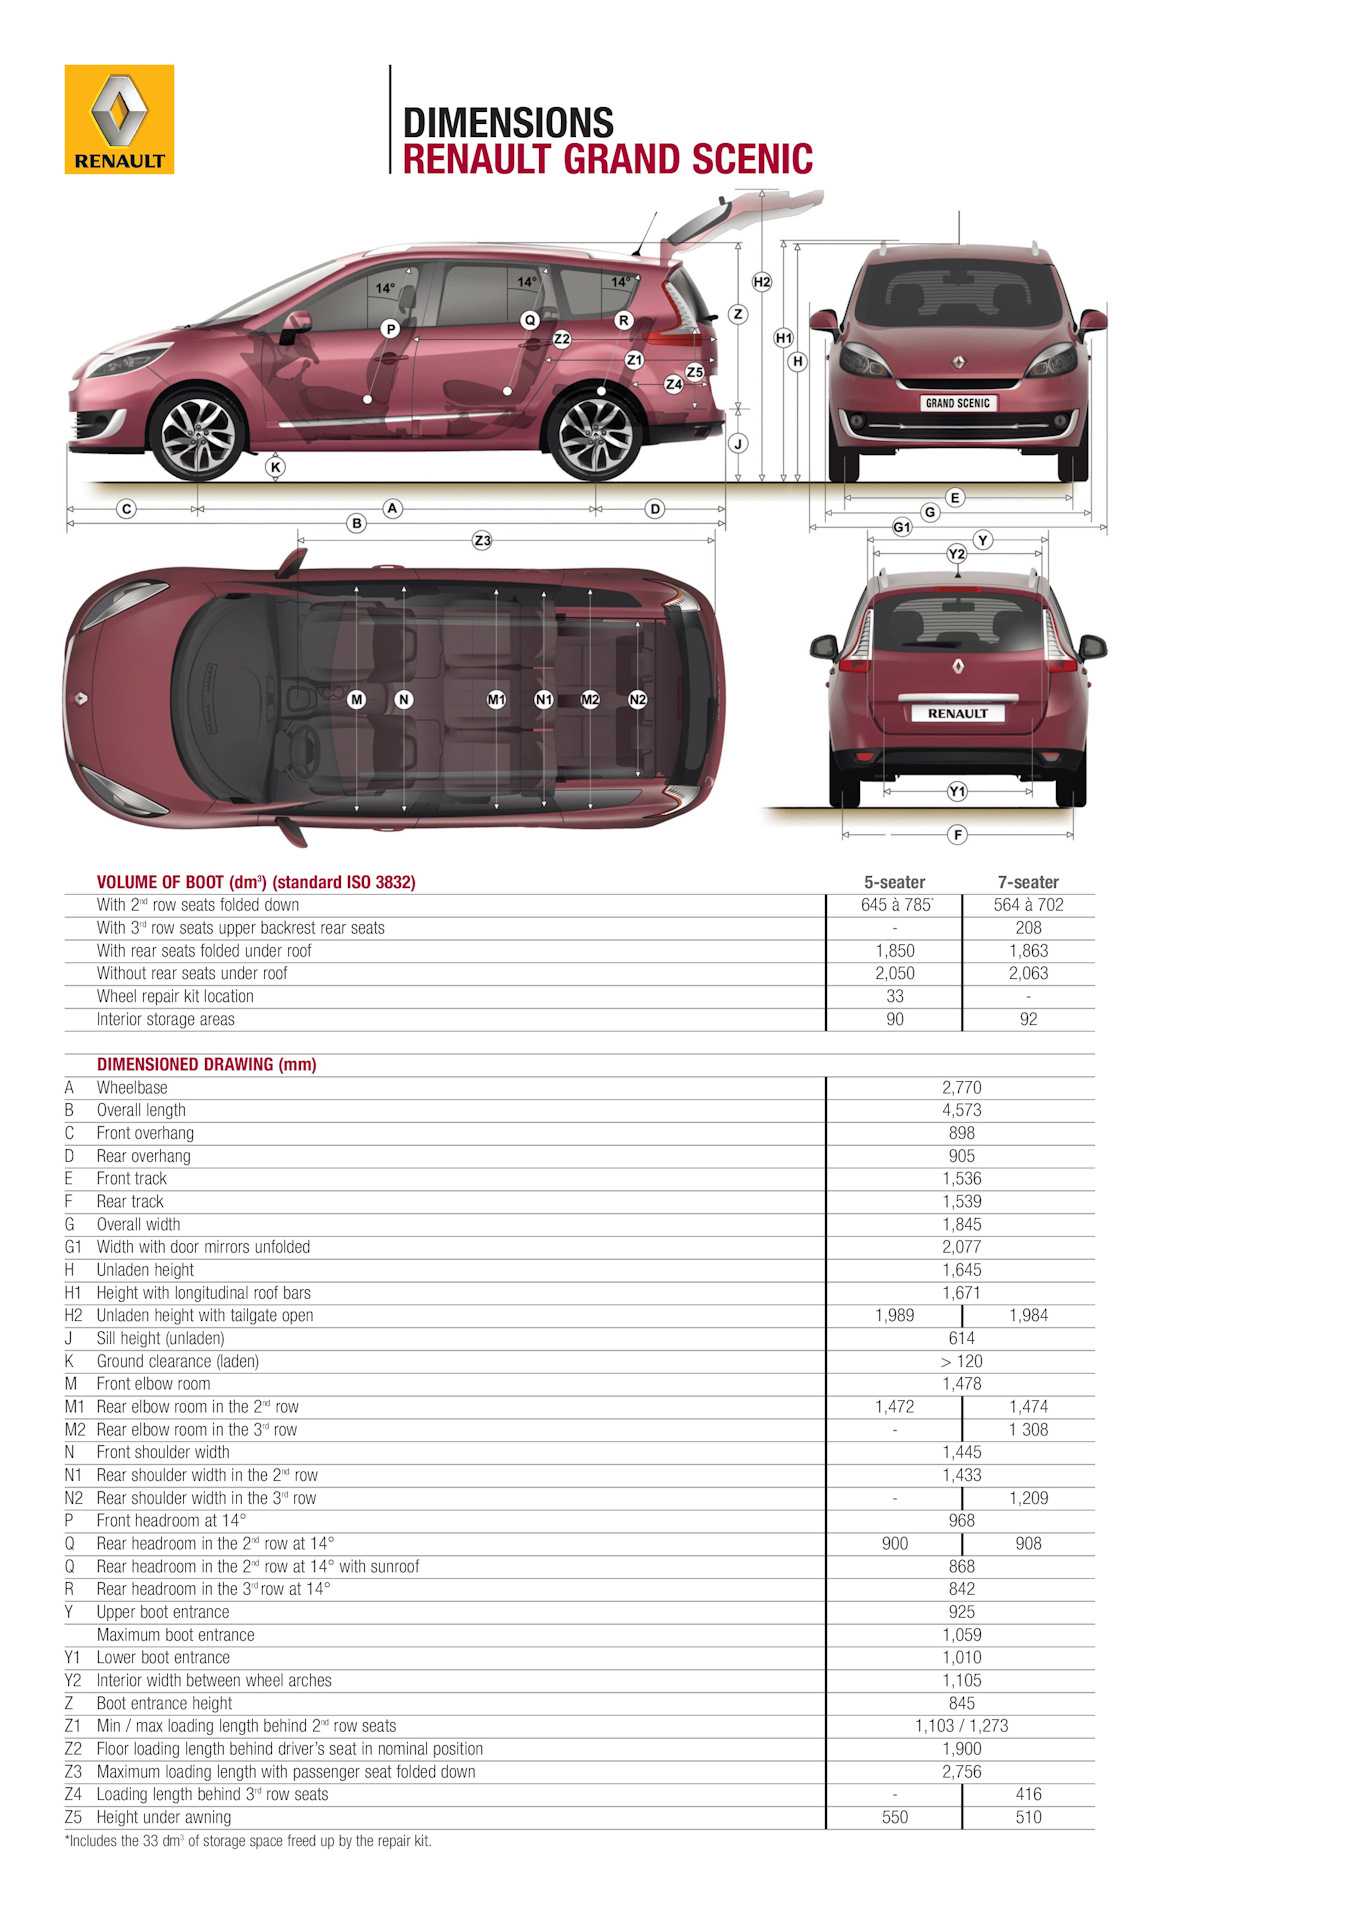 Обзор с фотографиями семиместного Renault Grand Scenic  тестдрайв, цены и основные технические характеристики этого автомобиля